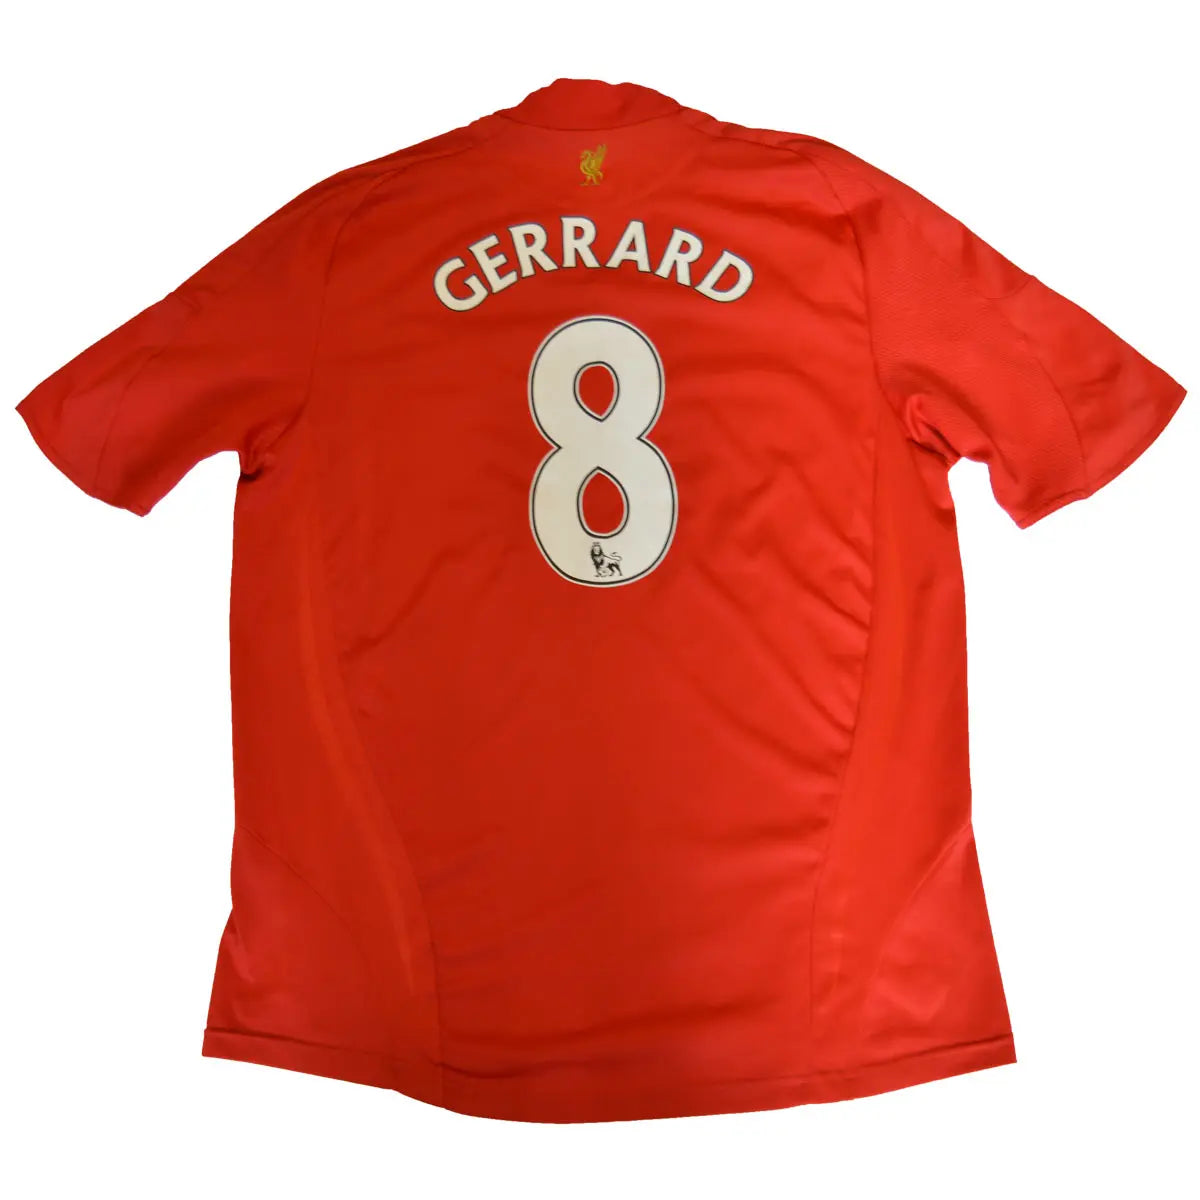 Maillot de foot rétro/vintage authentique rouge domicile adidas Liverpool 2008-2009 Gerrard flocage